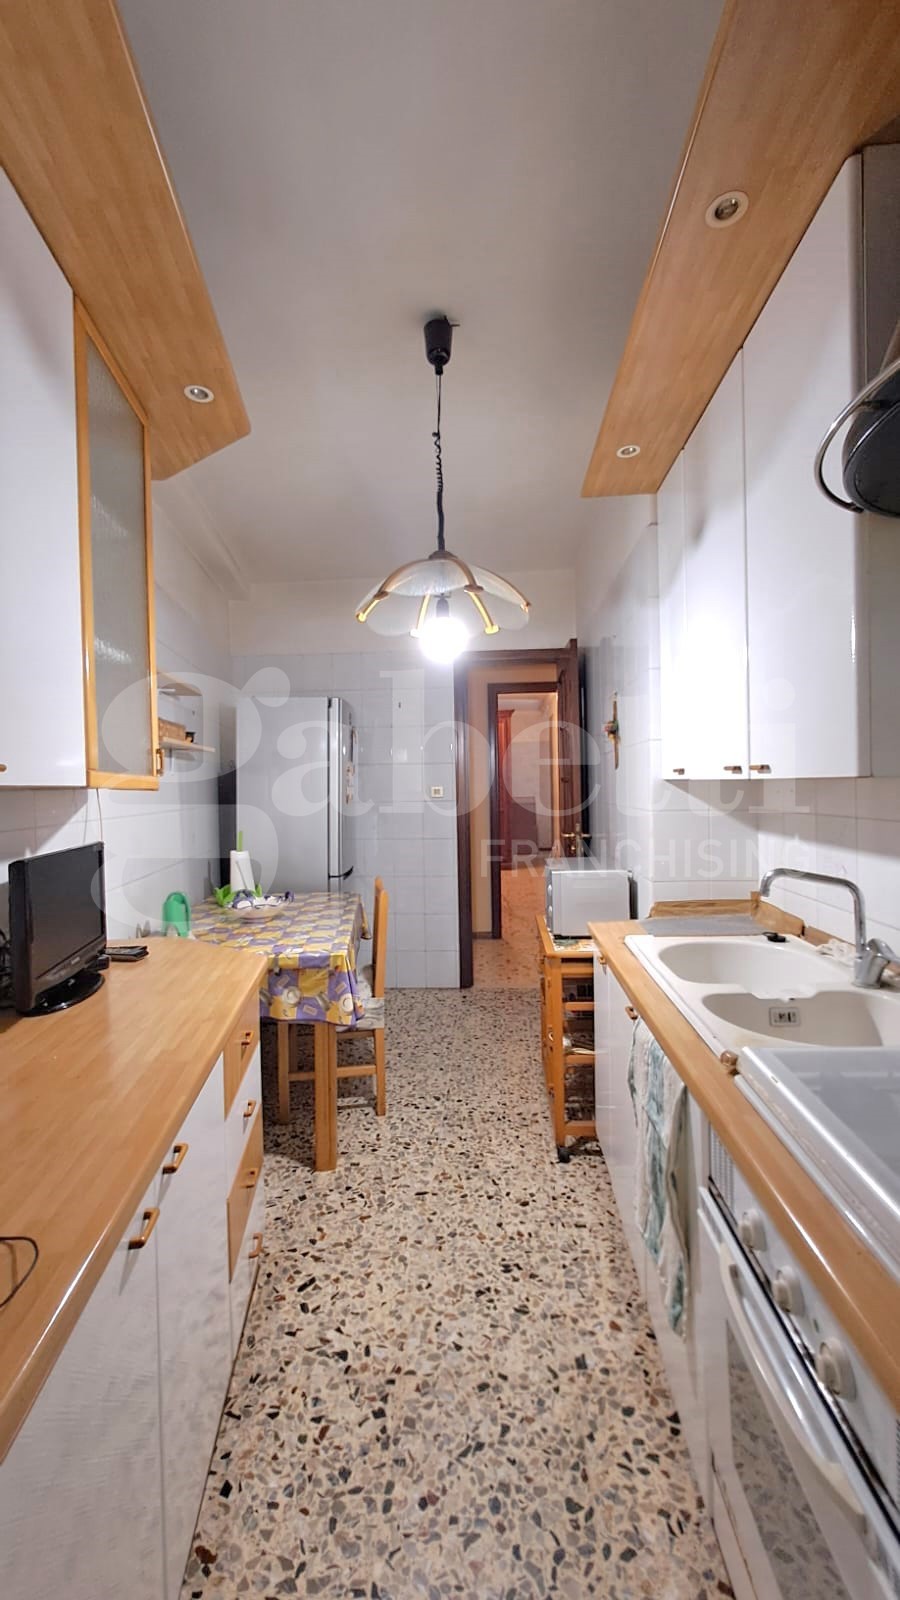 Appartamento di 85 mq in vendita - Catania